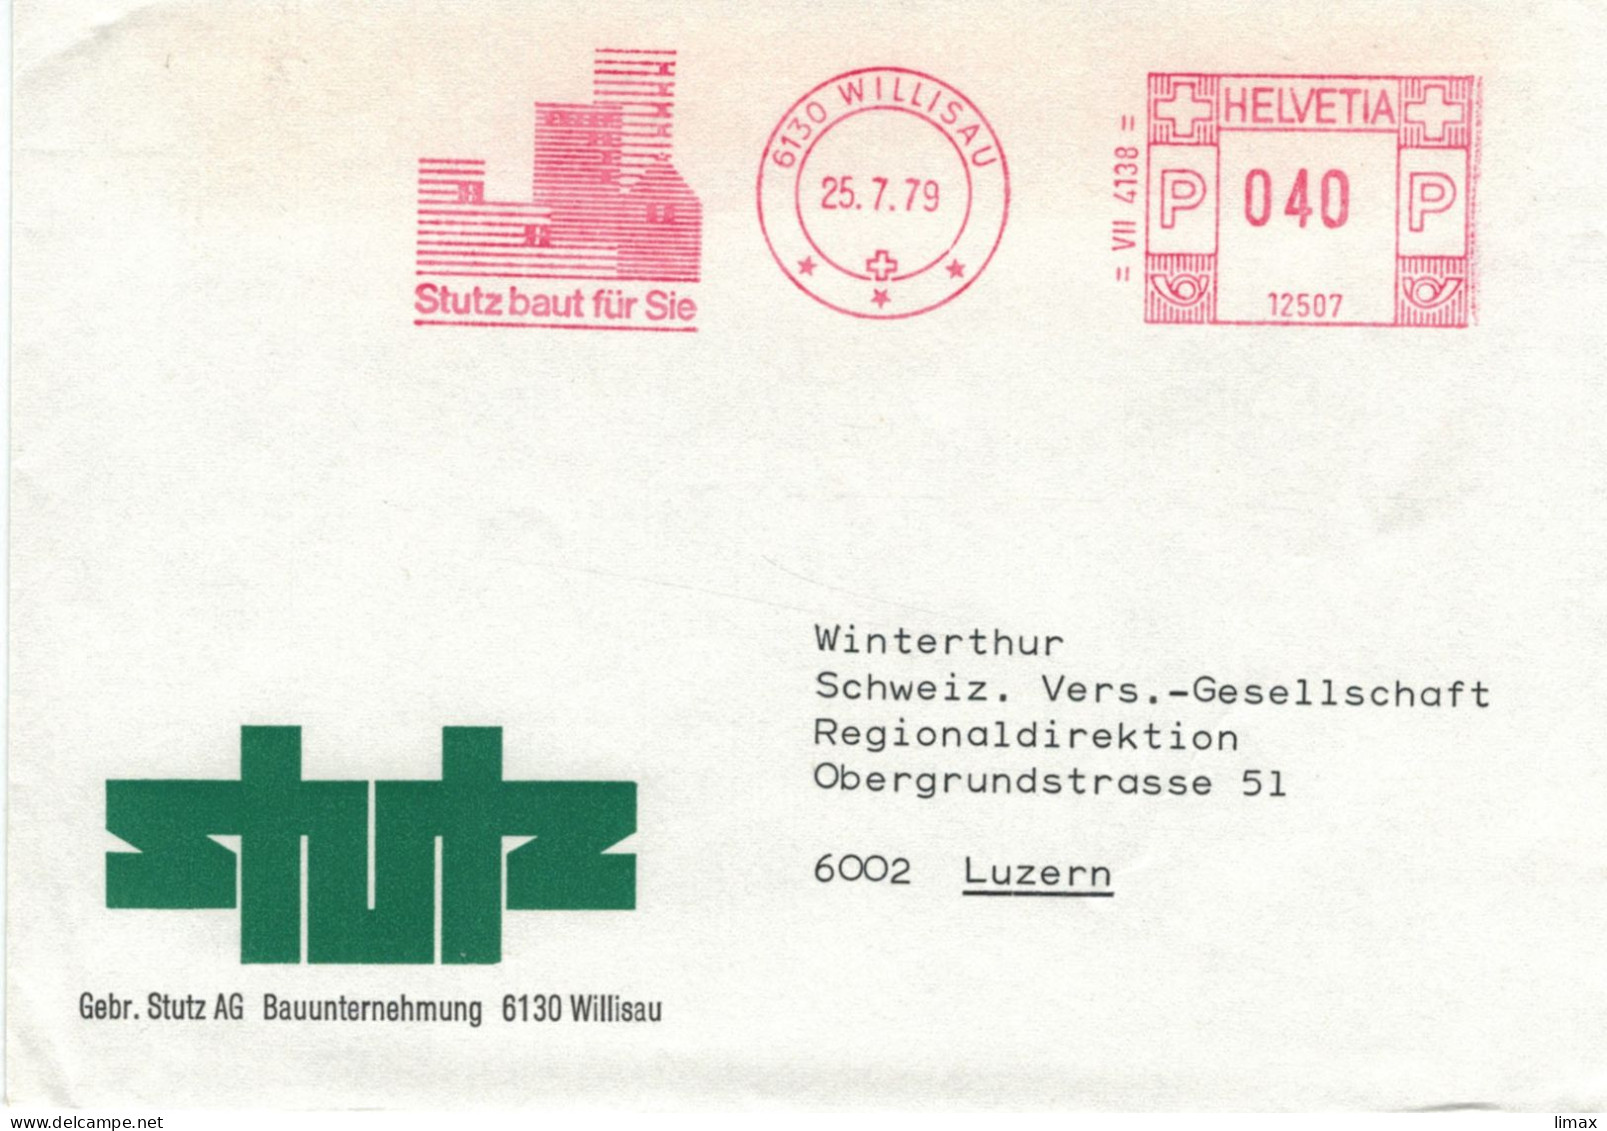 Stutz Bauunternehmung 6130 Willisau 1979 - Stempel 12507 - Frankiermaschinen (FraMA)